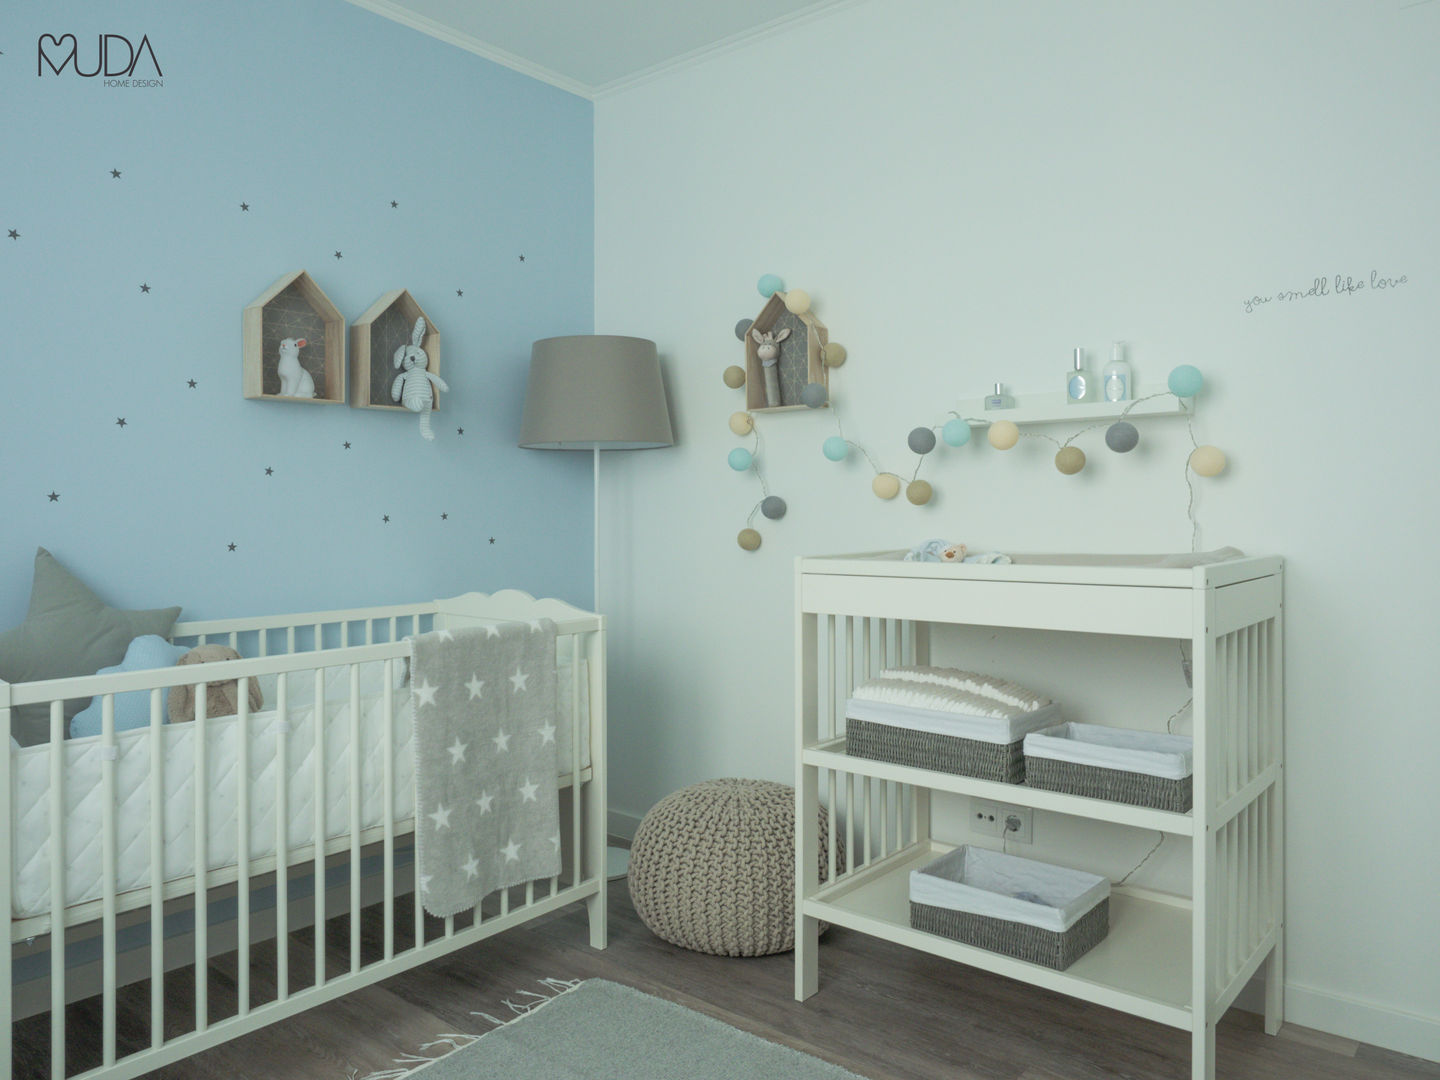 Una preciosa habitación infantil de estilo nórdico  Habitaciones infantiles,  Habitacion bebe ikea, Decorar habitacion bebe